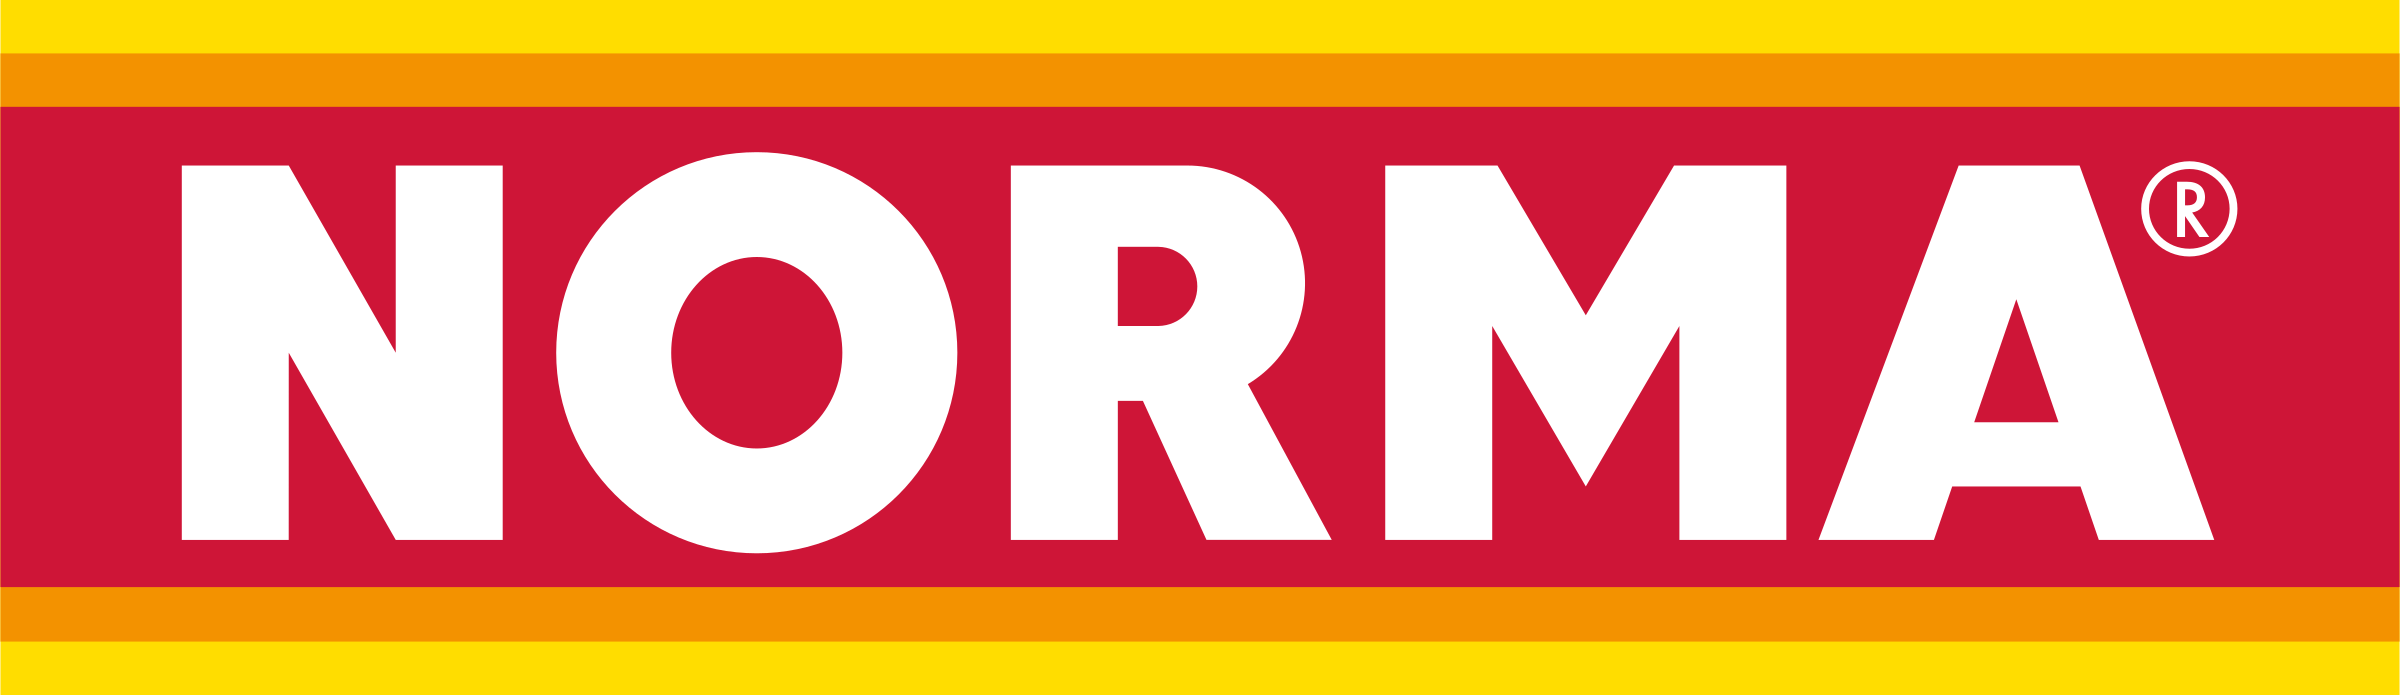 norma-4-logo-png-transparent